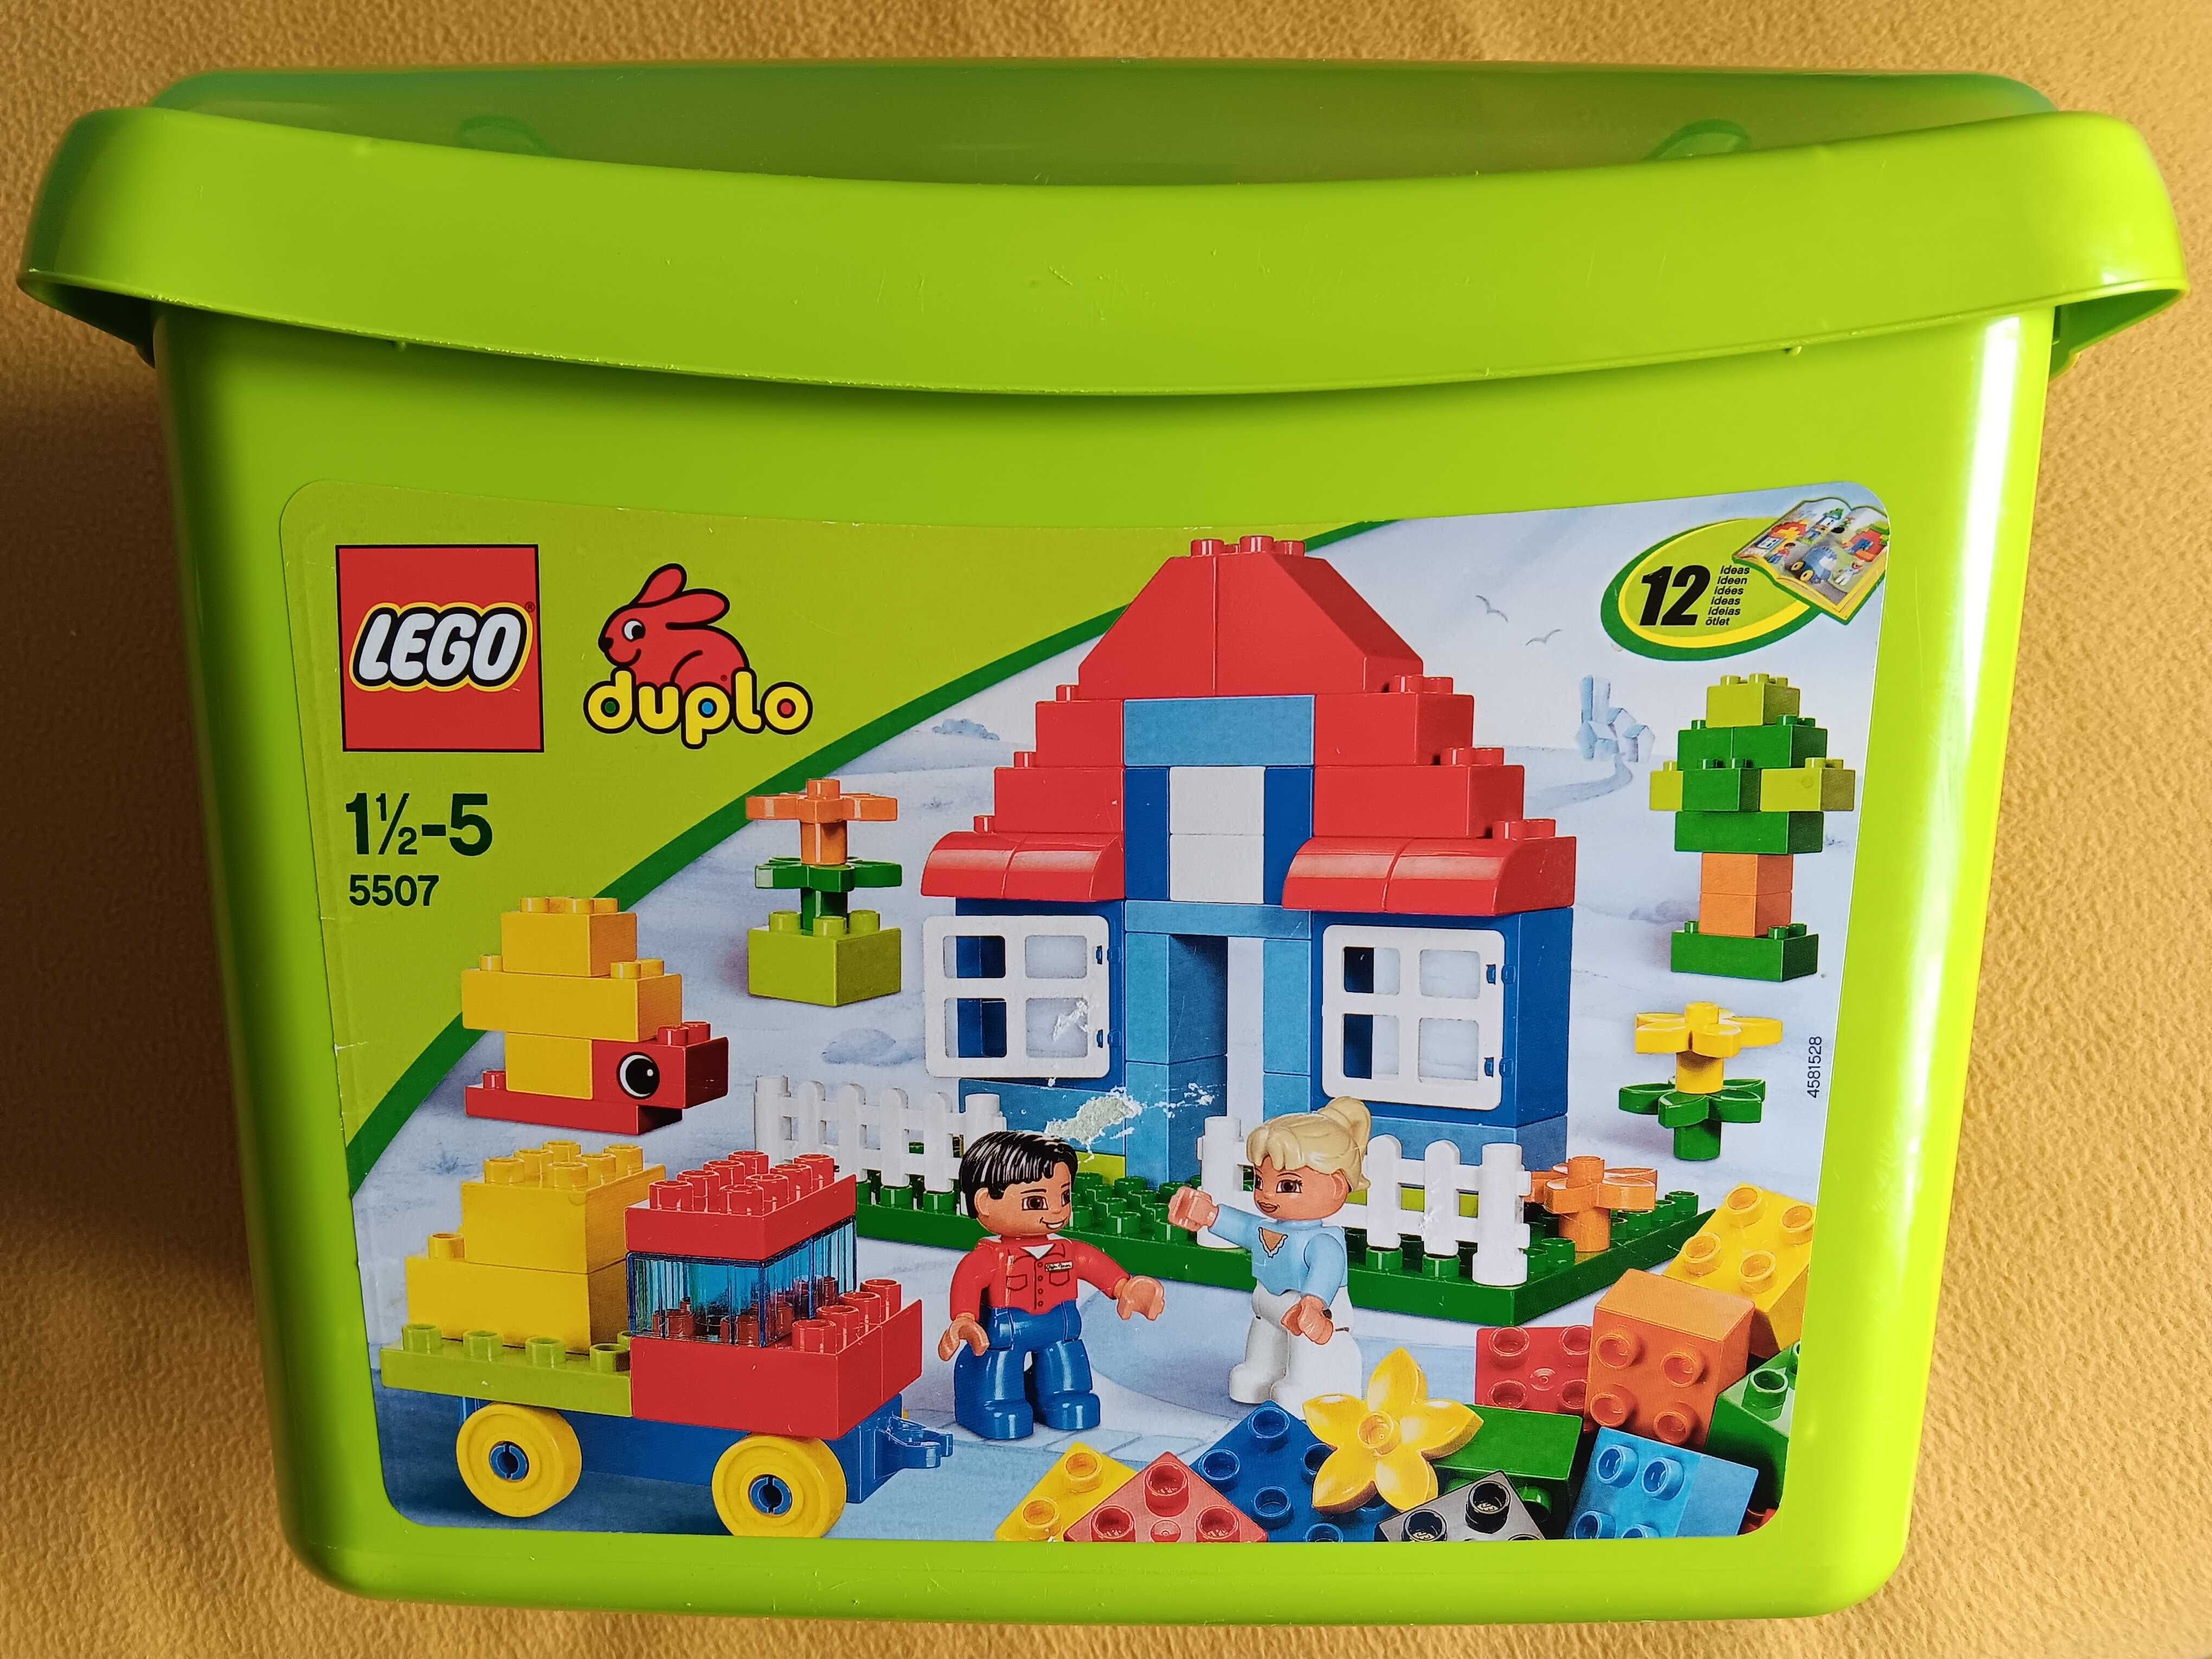 Lego Duplo 5507 Zestaw podstawowy startowy (Komplet+karton+instrukcja)